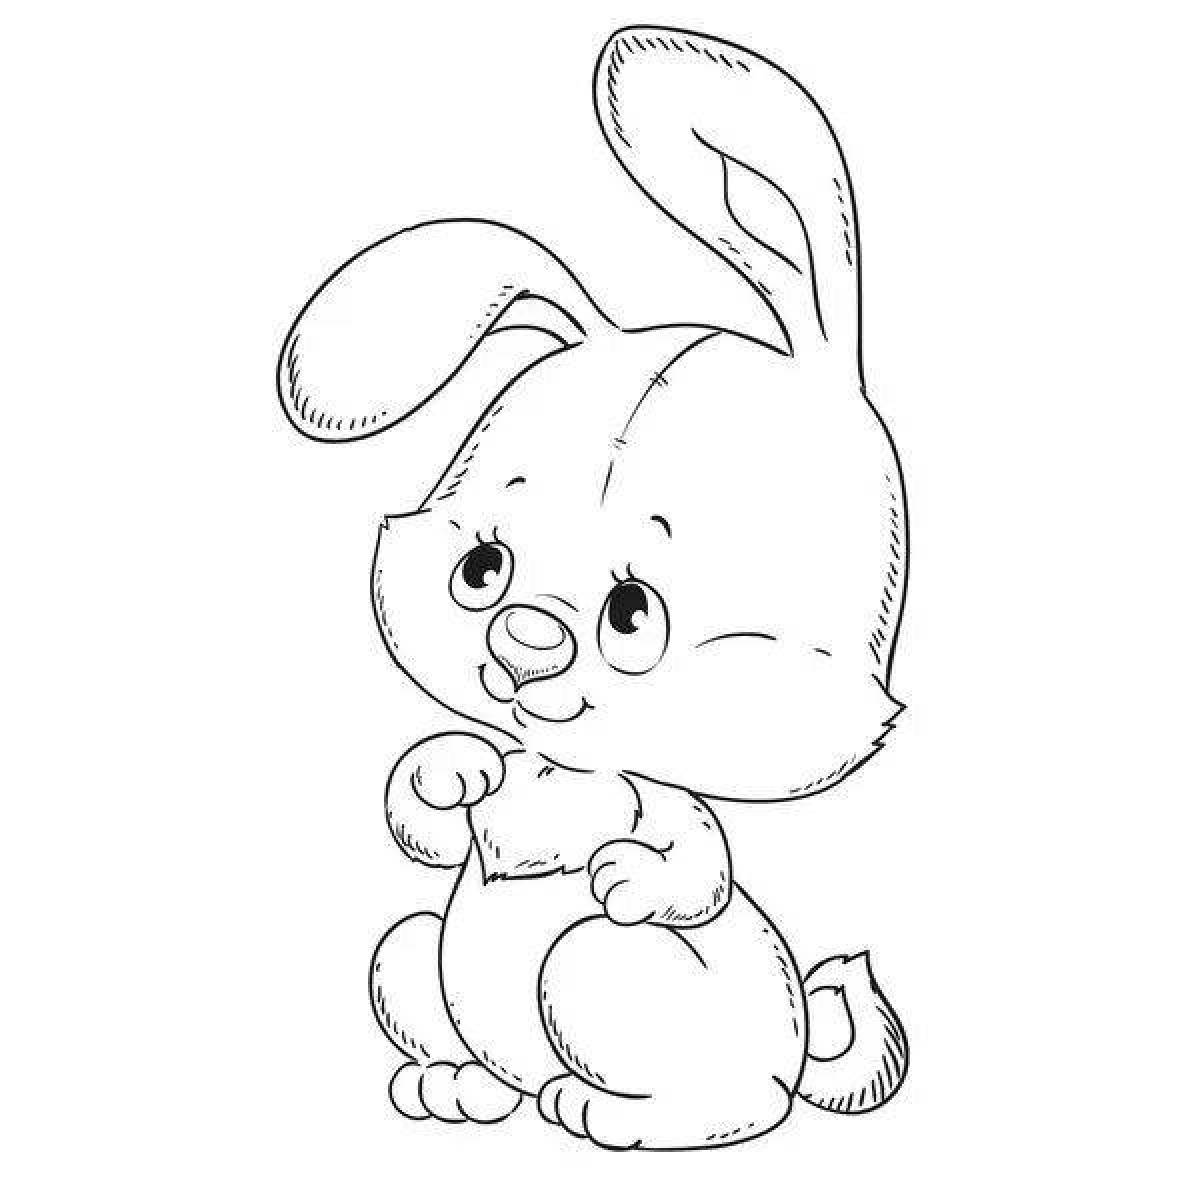 Cute cute bunny coloring book